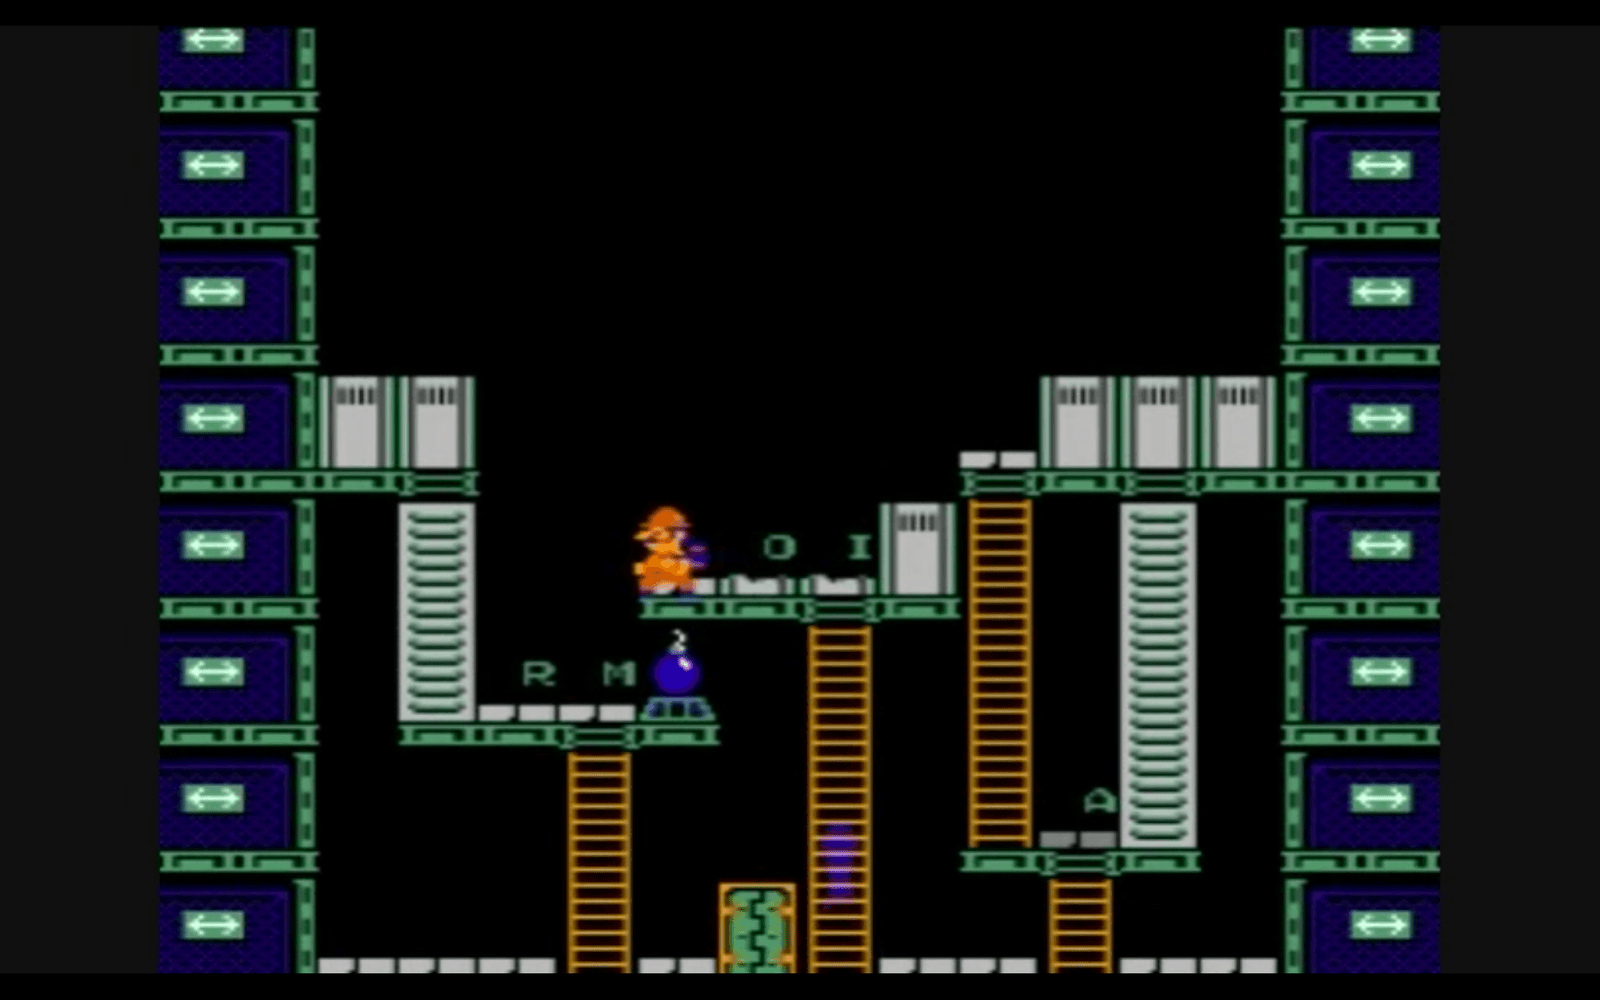 Mario och hans bror medverkade i spelet Wrecking Crew, först för arkad 1984 och ett år senare på NES-konsolen.